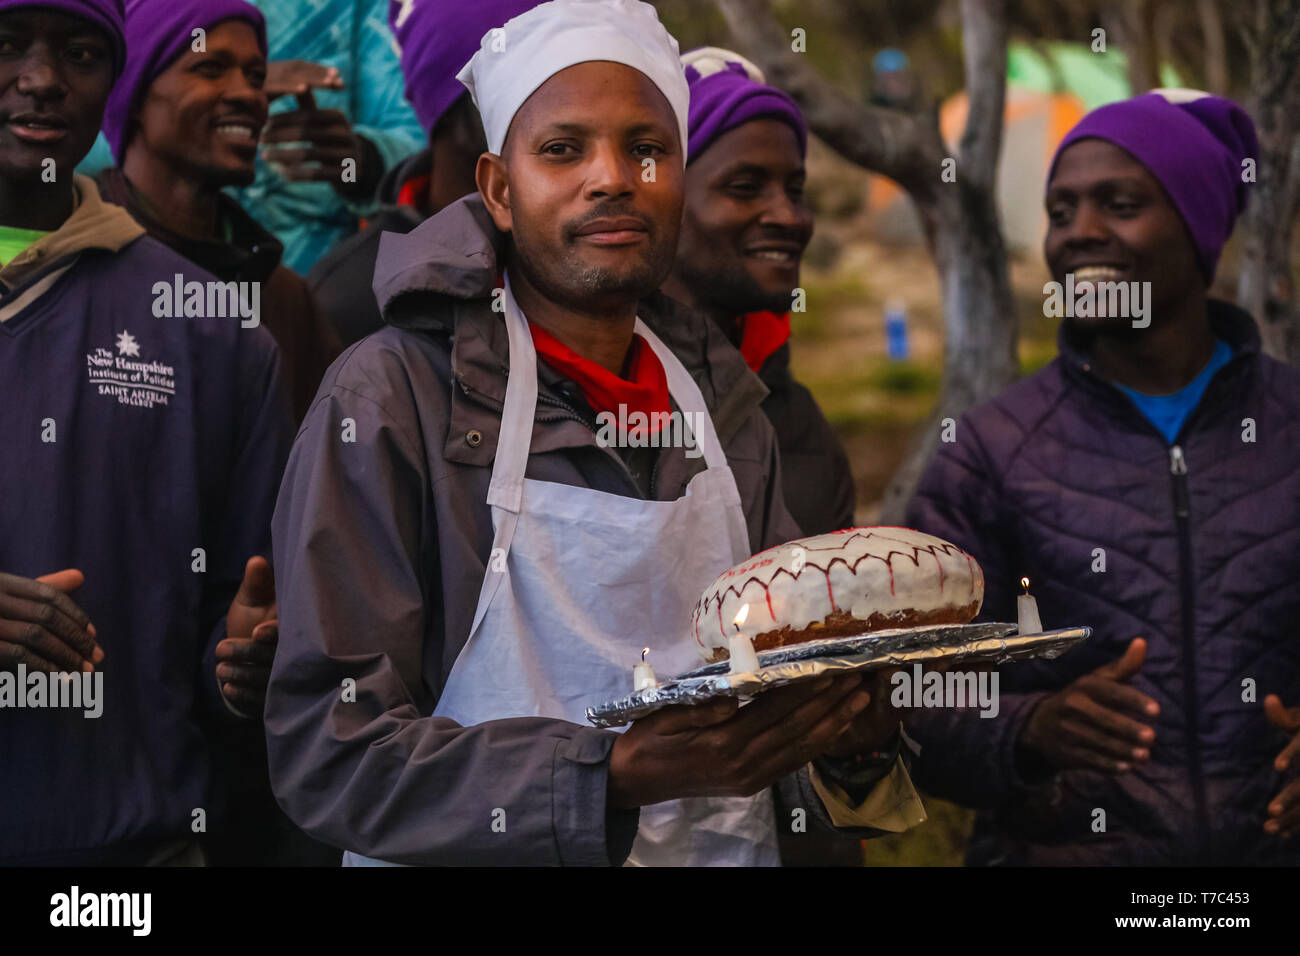 Afrikanische Menschen, um meinen Geburtstag zu feiern, in einem Dschungel versammelt, glückliche Männer singen Lieder und Spaß im Freien. Tragen warme Jacken und Mützen. Mann Stockfoto